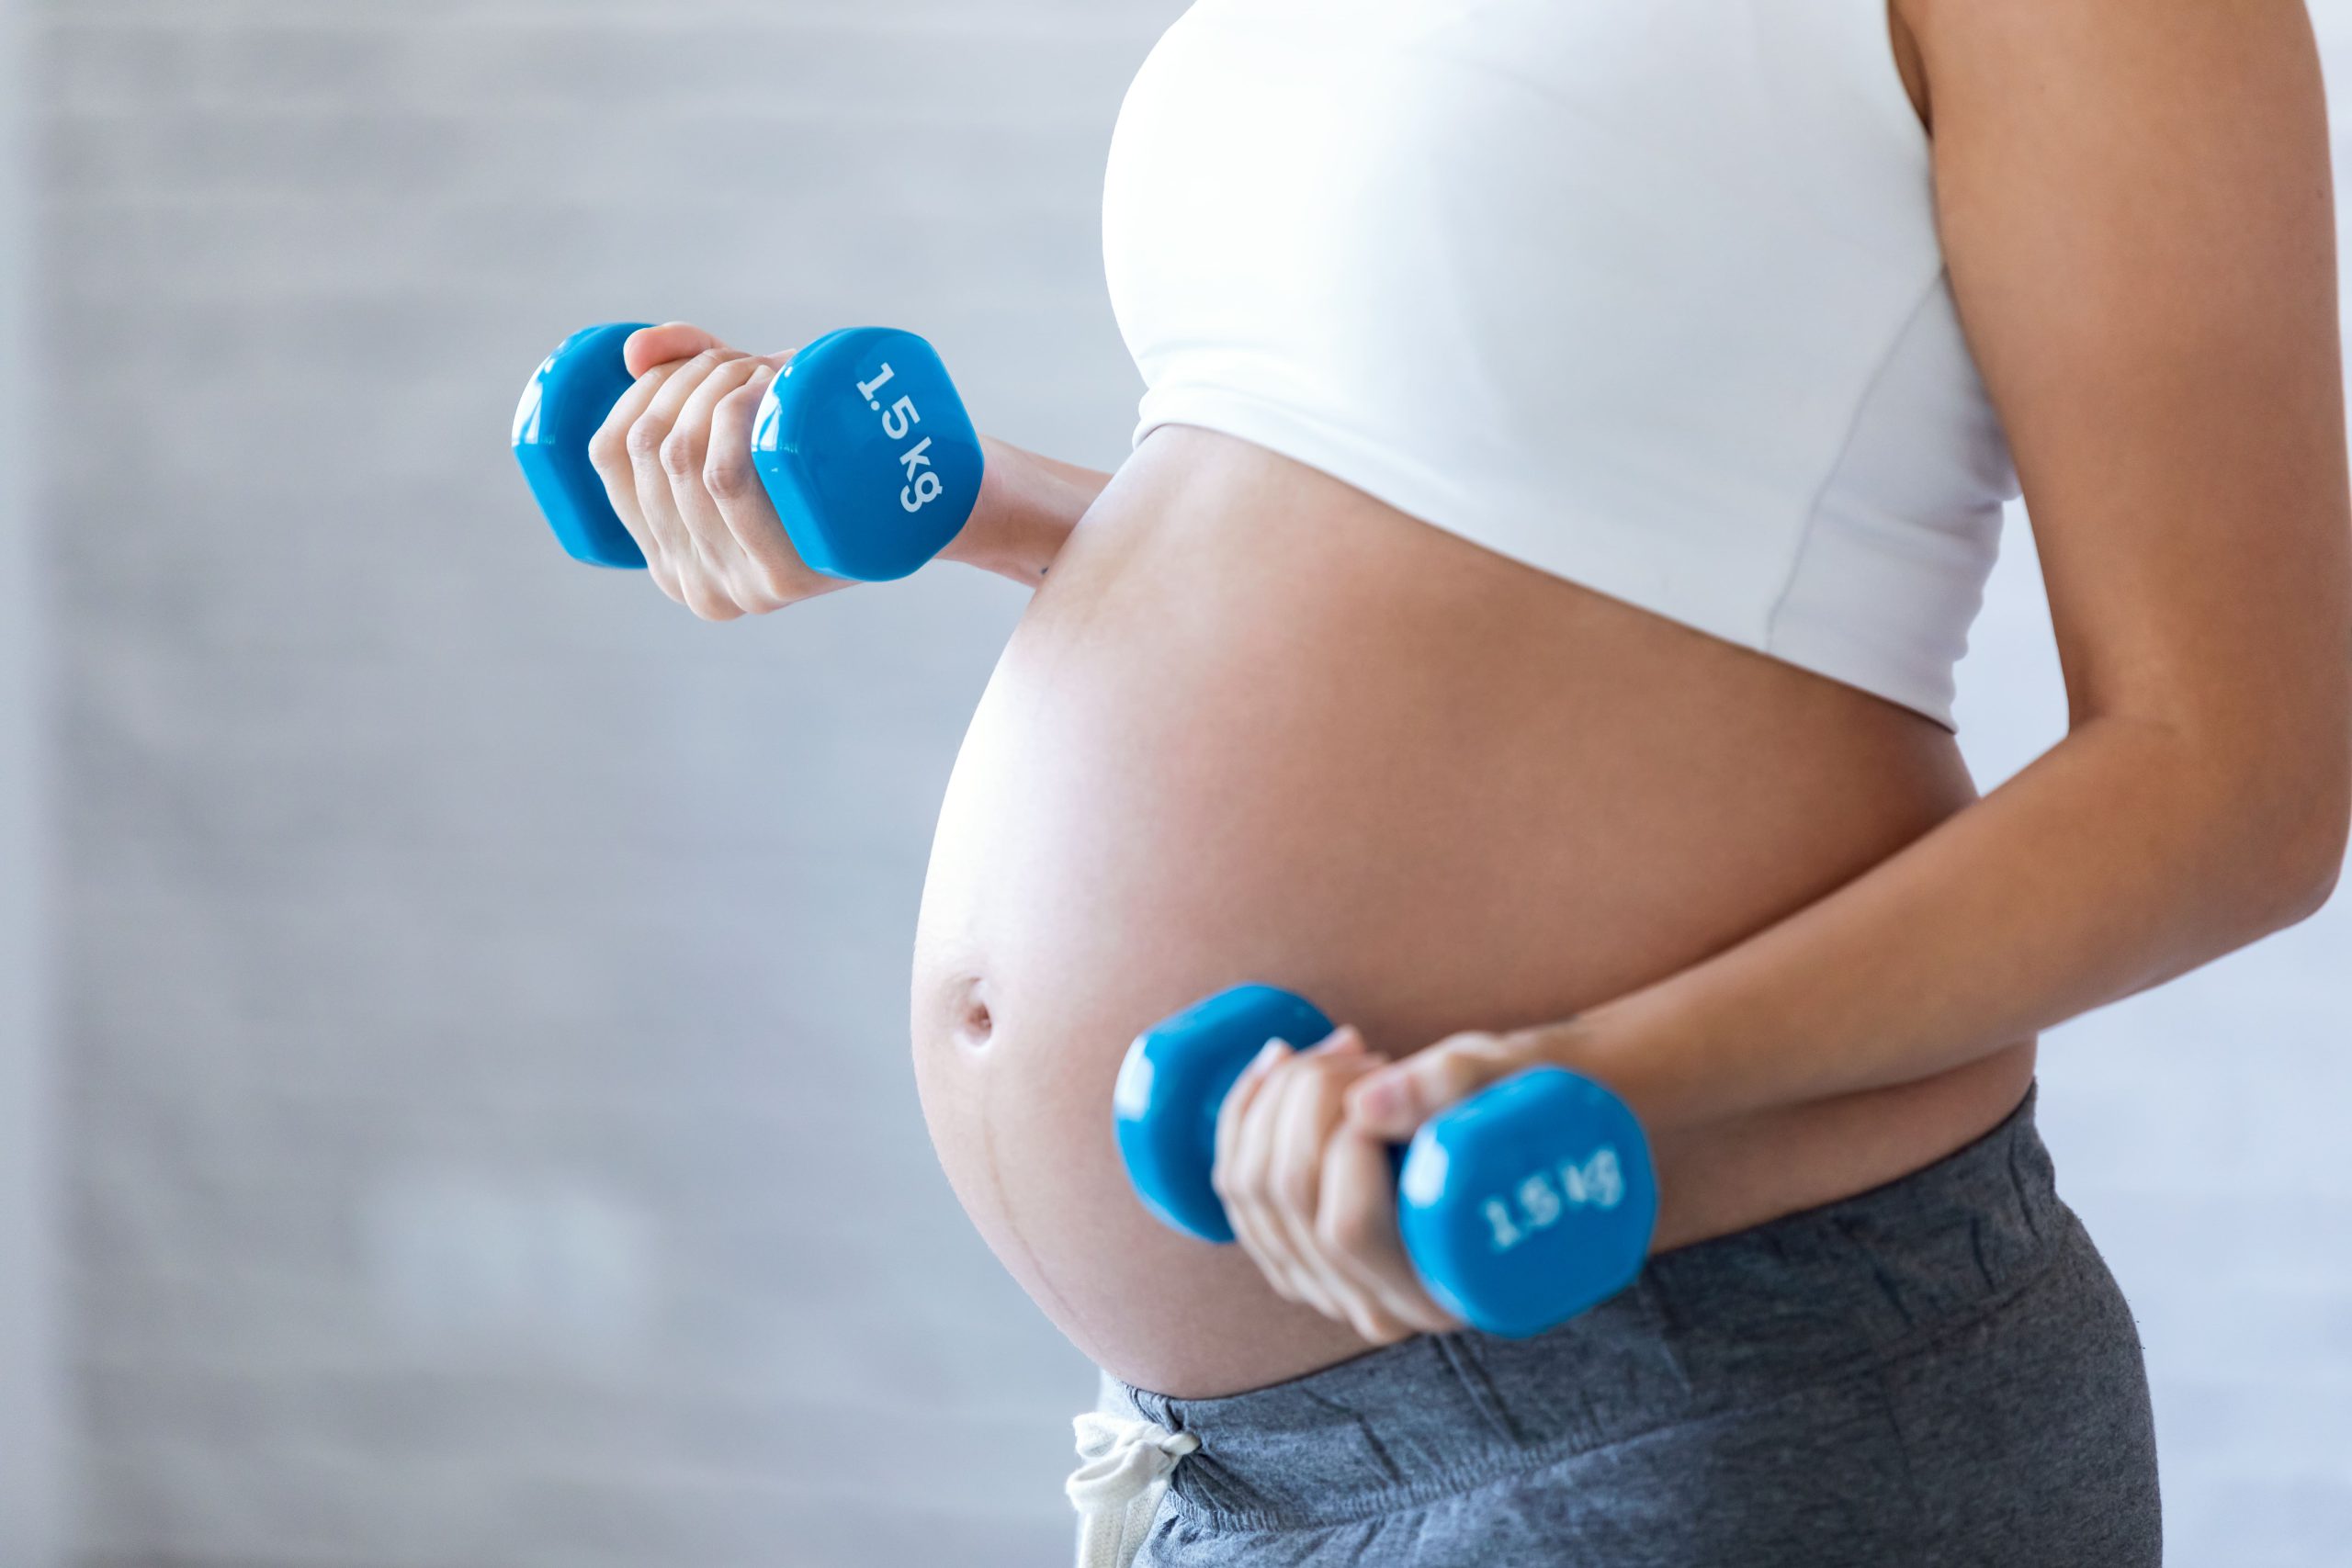 Exercícios na gestação promovem mais saúde para mãe e bebê